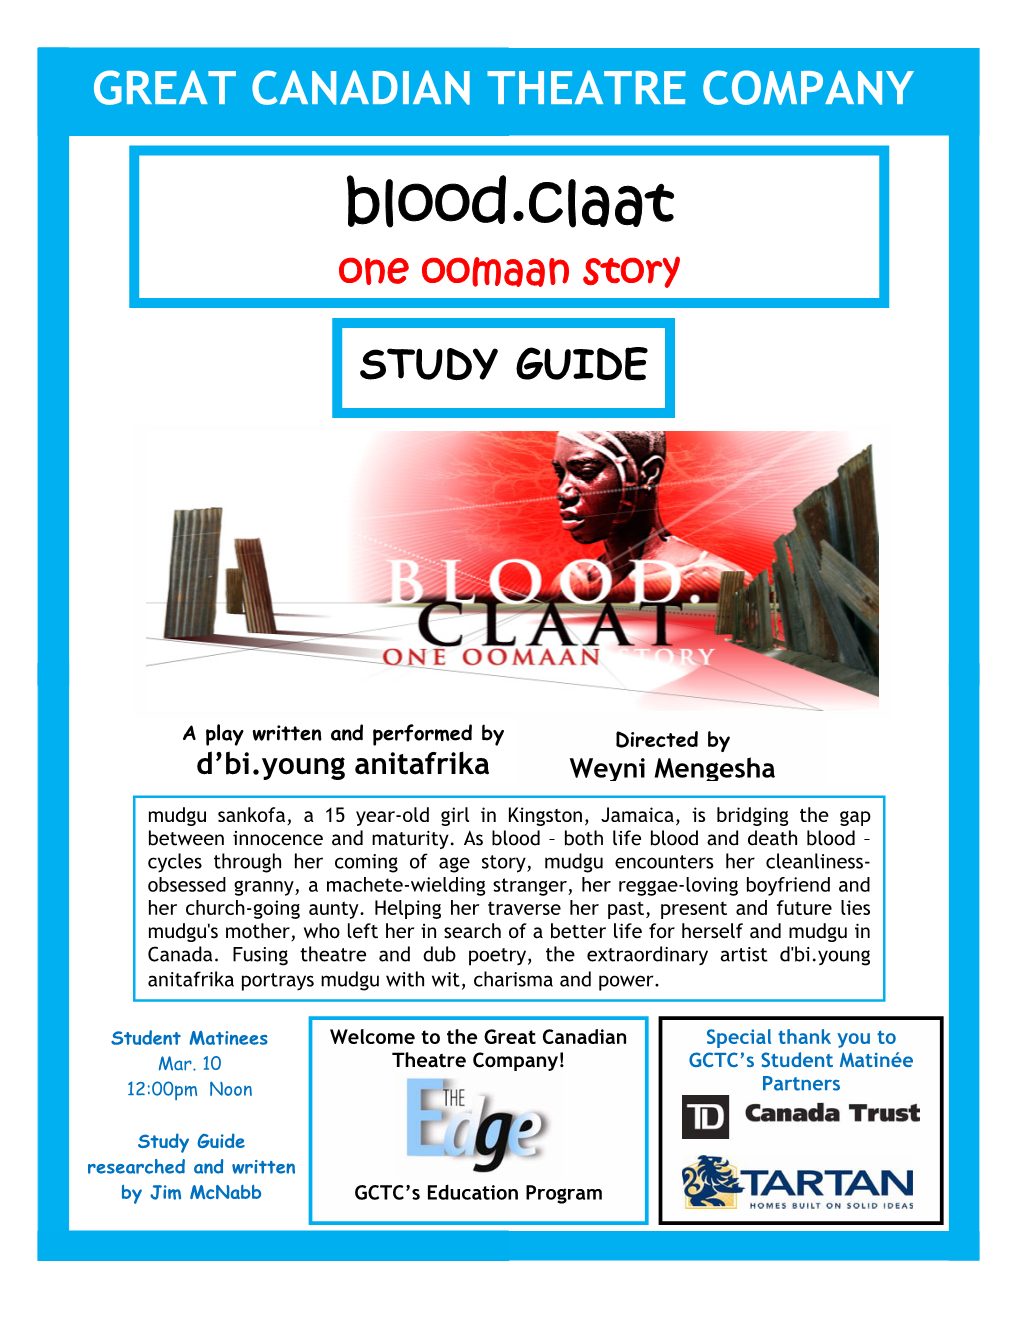 Blood.Claat One Oomaan Story